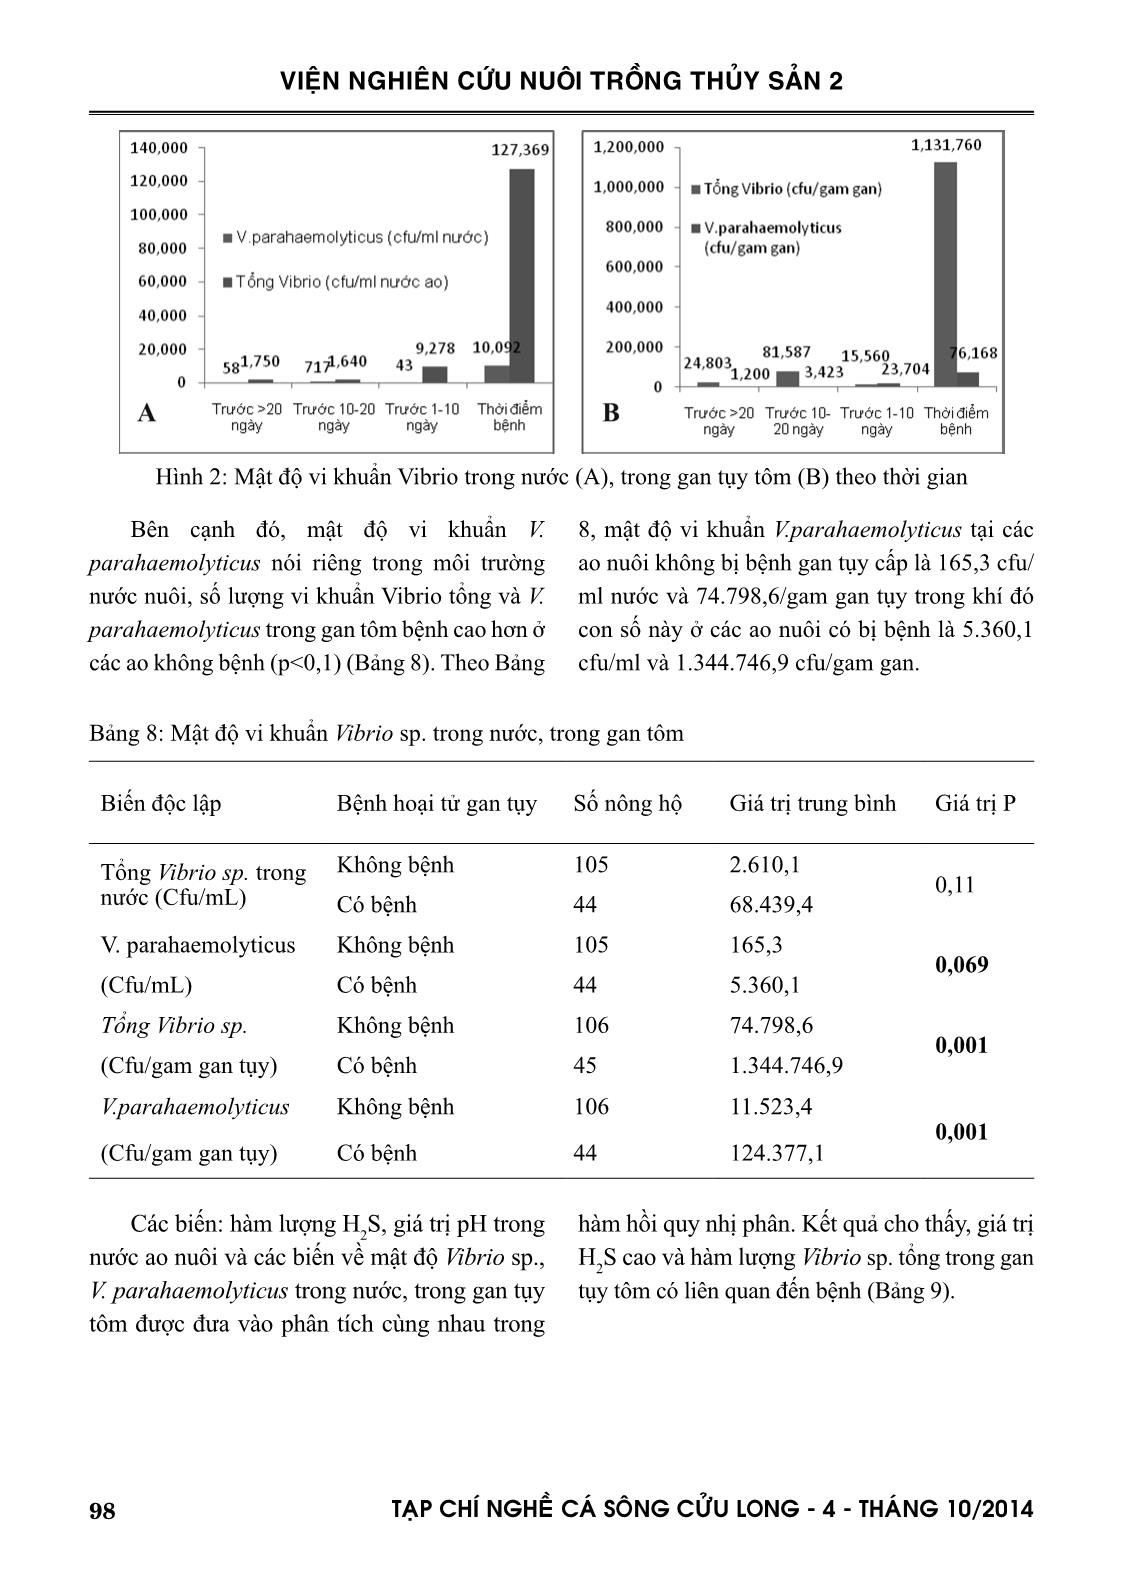 Một số yếu tố nguy cơ liên quan đến bệnh hoại tử gan tụy cấp trên tôm thẻ (Penaeus vannamei) nuôi công nghiệp quy mô nông hộ tại huyện Đầm Dơi, Cà Mau trang 7